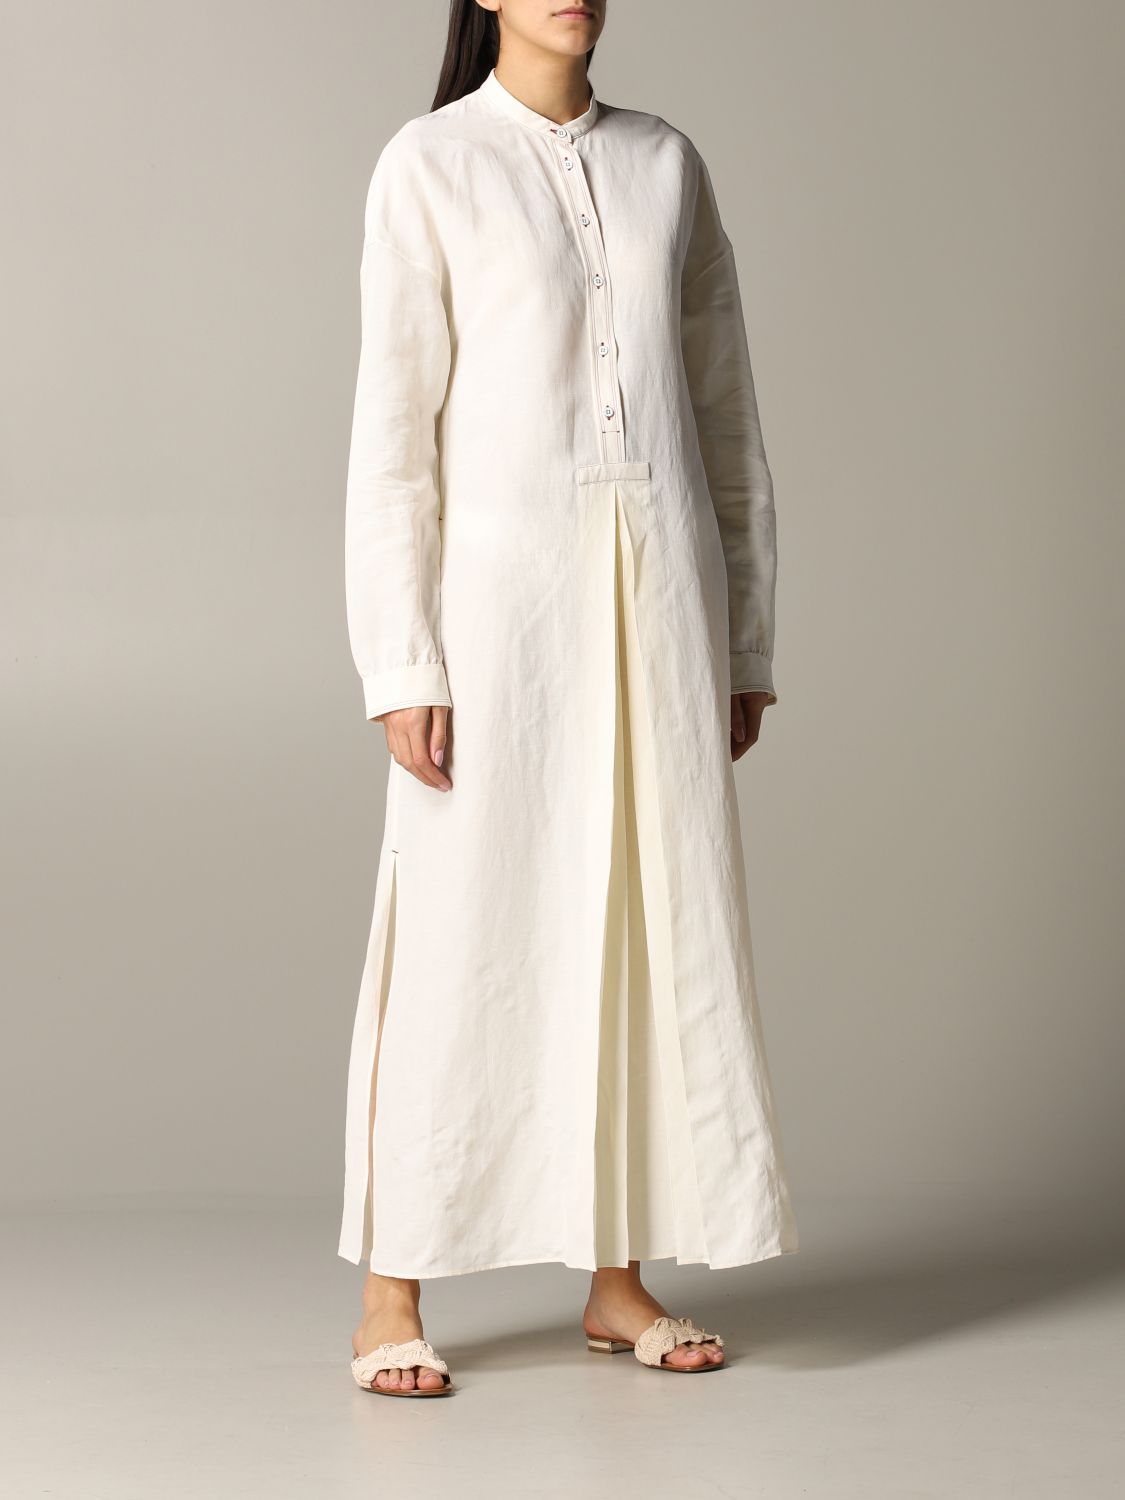 Uitstroom suspensie Slovenië Jil Sander Outlet: long tunic dress - White | Jil Sander dress  JSPQ501706WQ390800 online on GIGLIO.COM